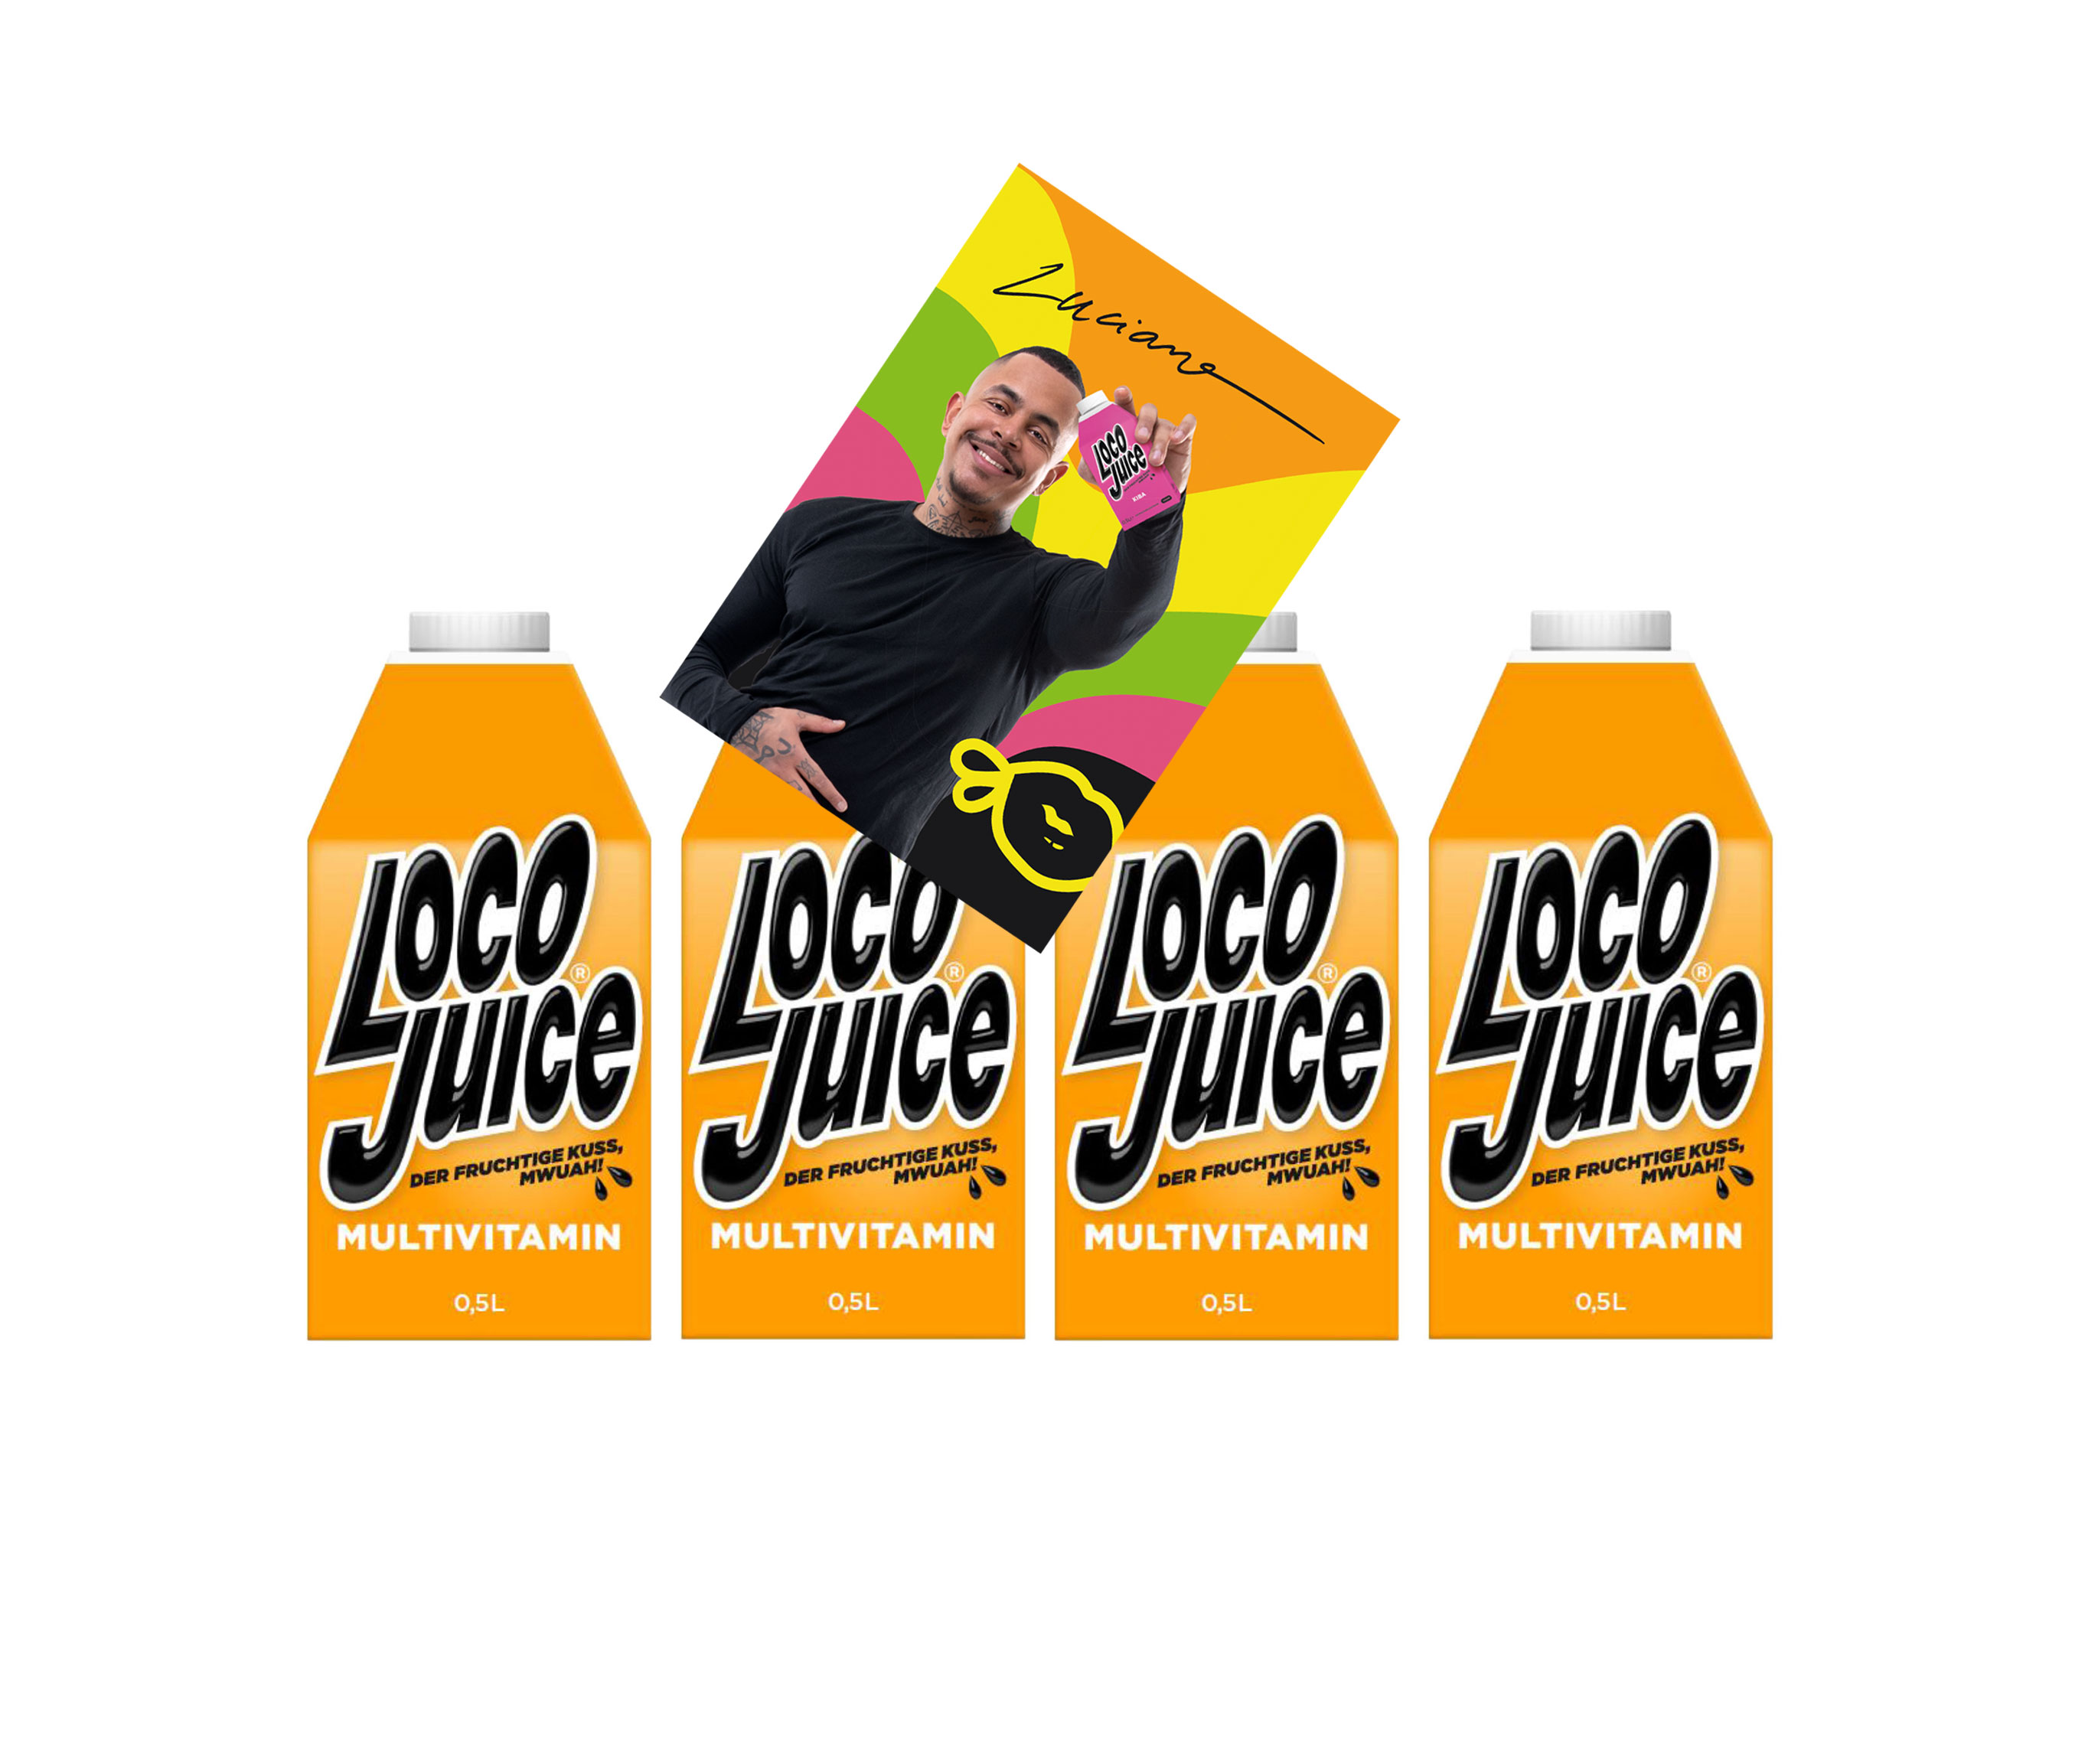 Loco Juice 4er Set Multivitamin 4x 0,5L von Luciano der Fruchtige Mwuah + digitalisierte Autogrammkarte